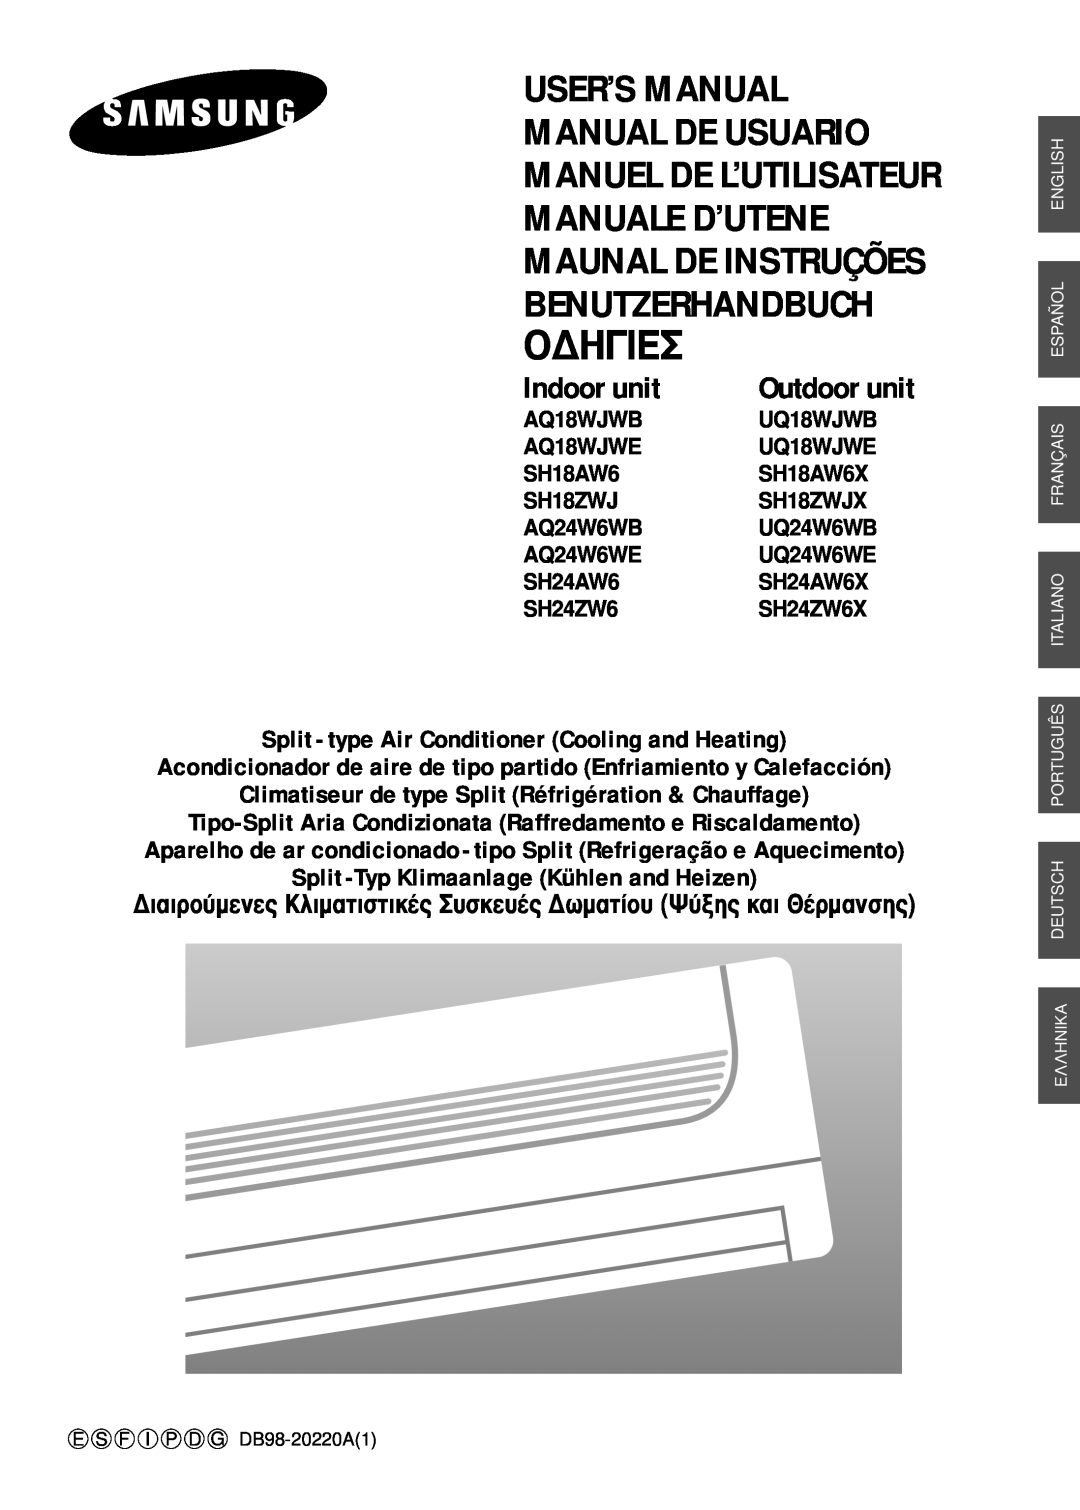 Samsung SH24AW6 manual Unidad Exterior, Manual De Usuario, Acondicionador De Aire De Tipo Partido, Unidad Interior 